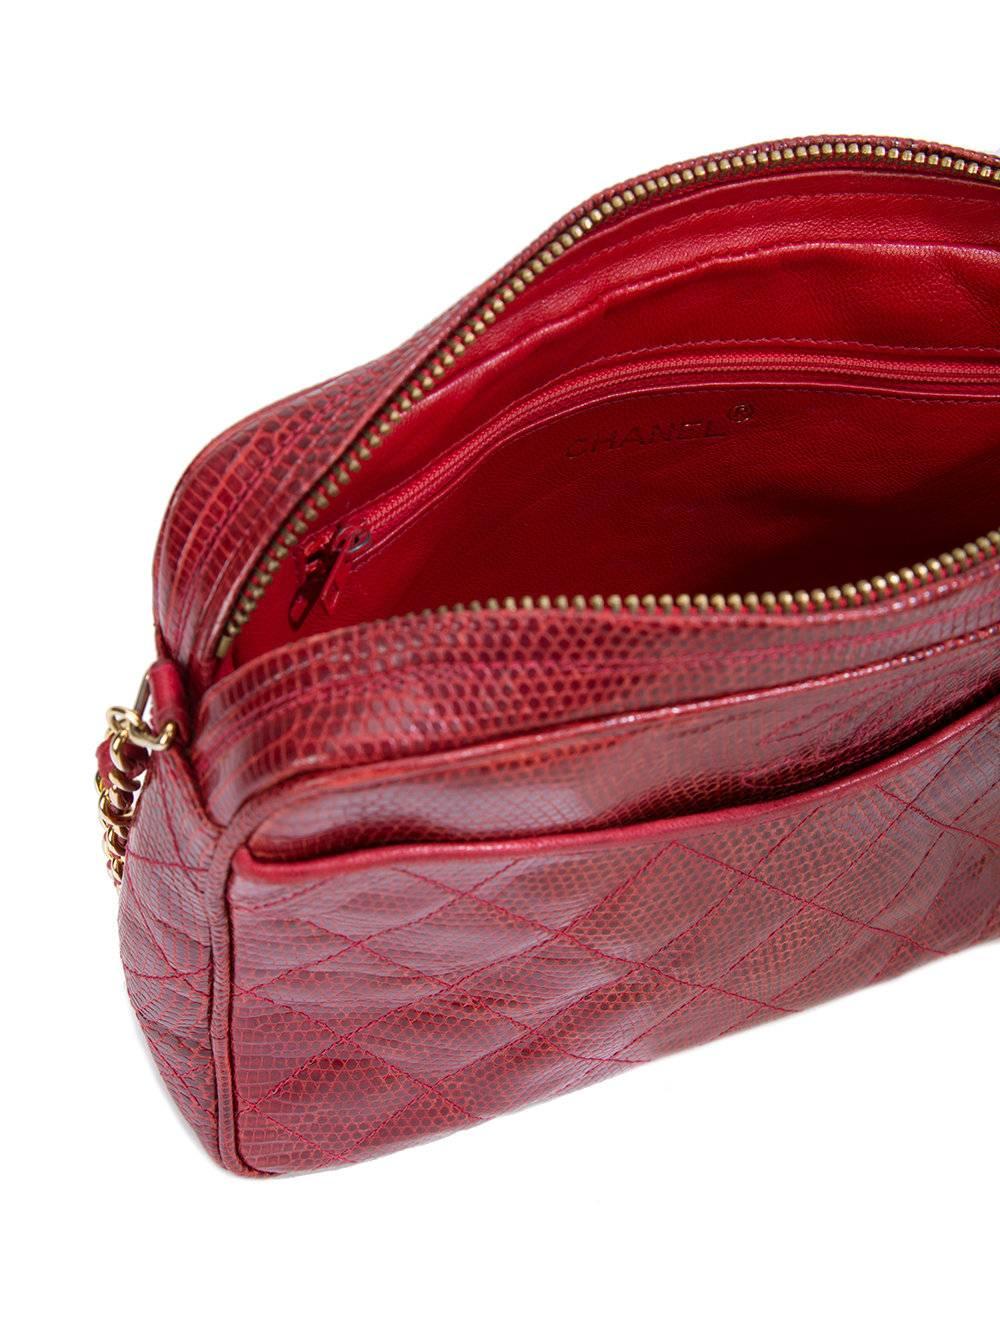 Chanel Red Lizard Leather Tassel Evening Camera Shoulder Bag 4